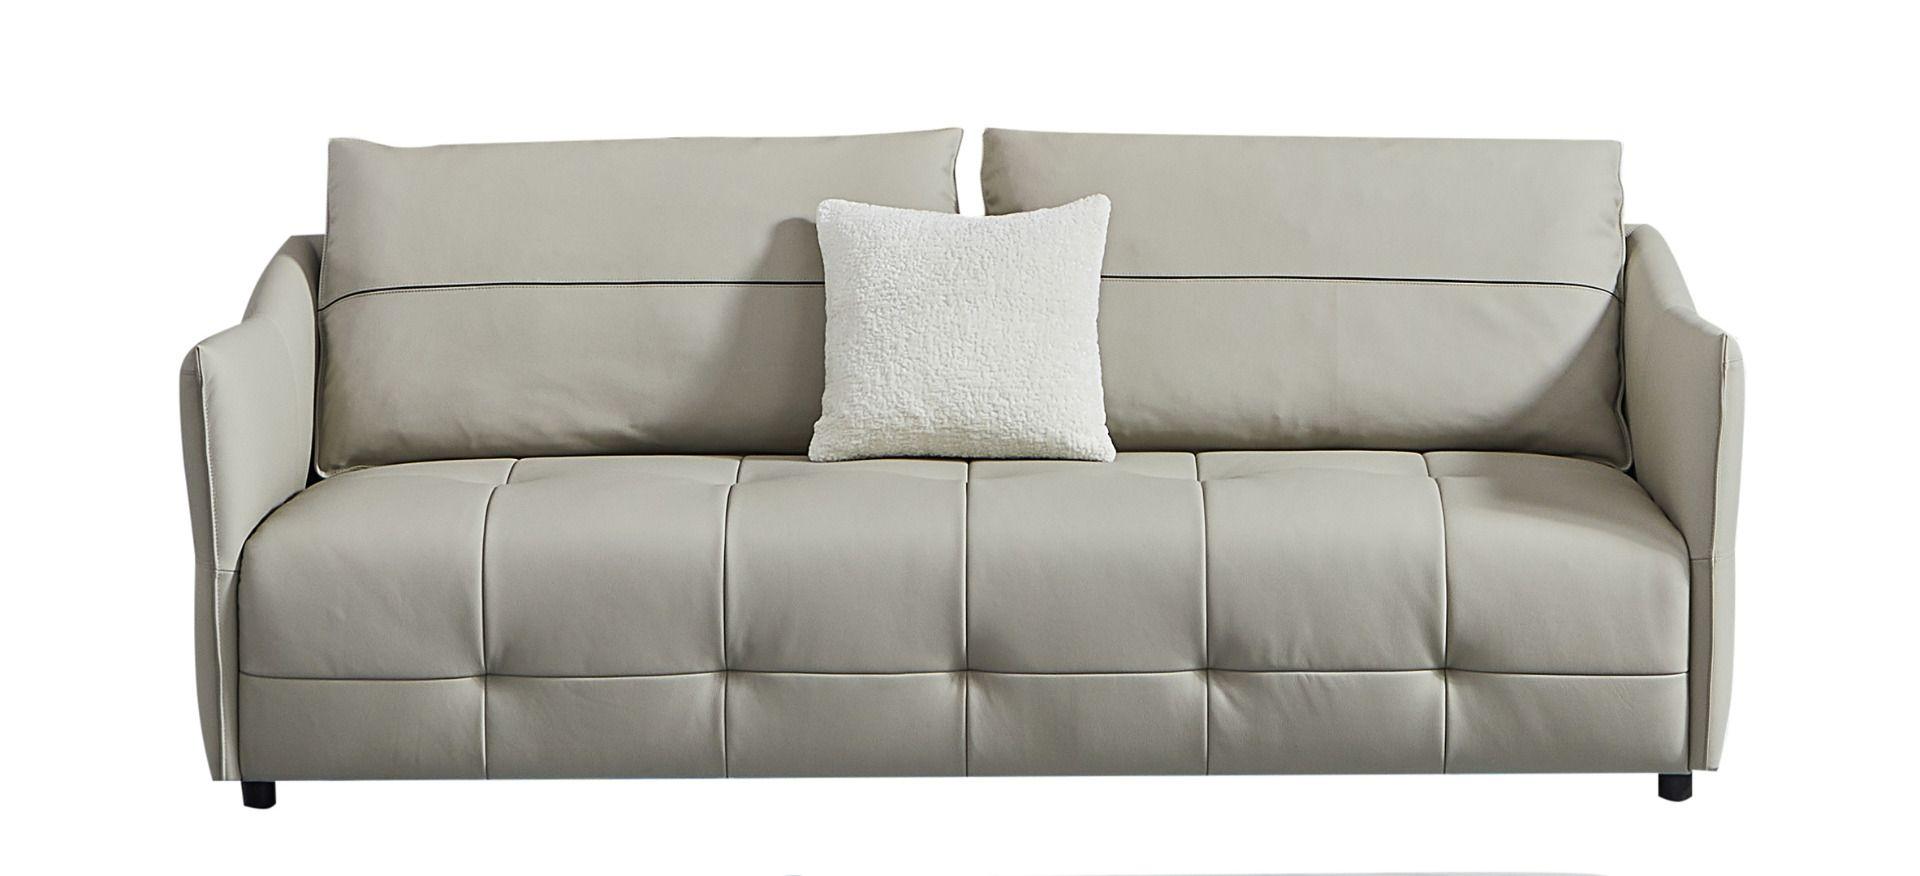 Contemporary Sofa EK-Y1007-SF EK-Y1007-SF in Light Gray Top grain leather